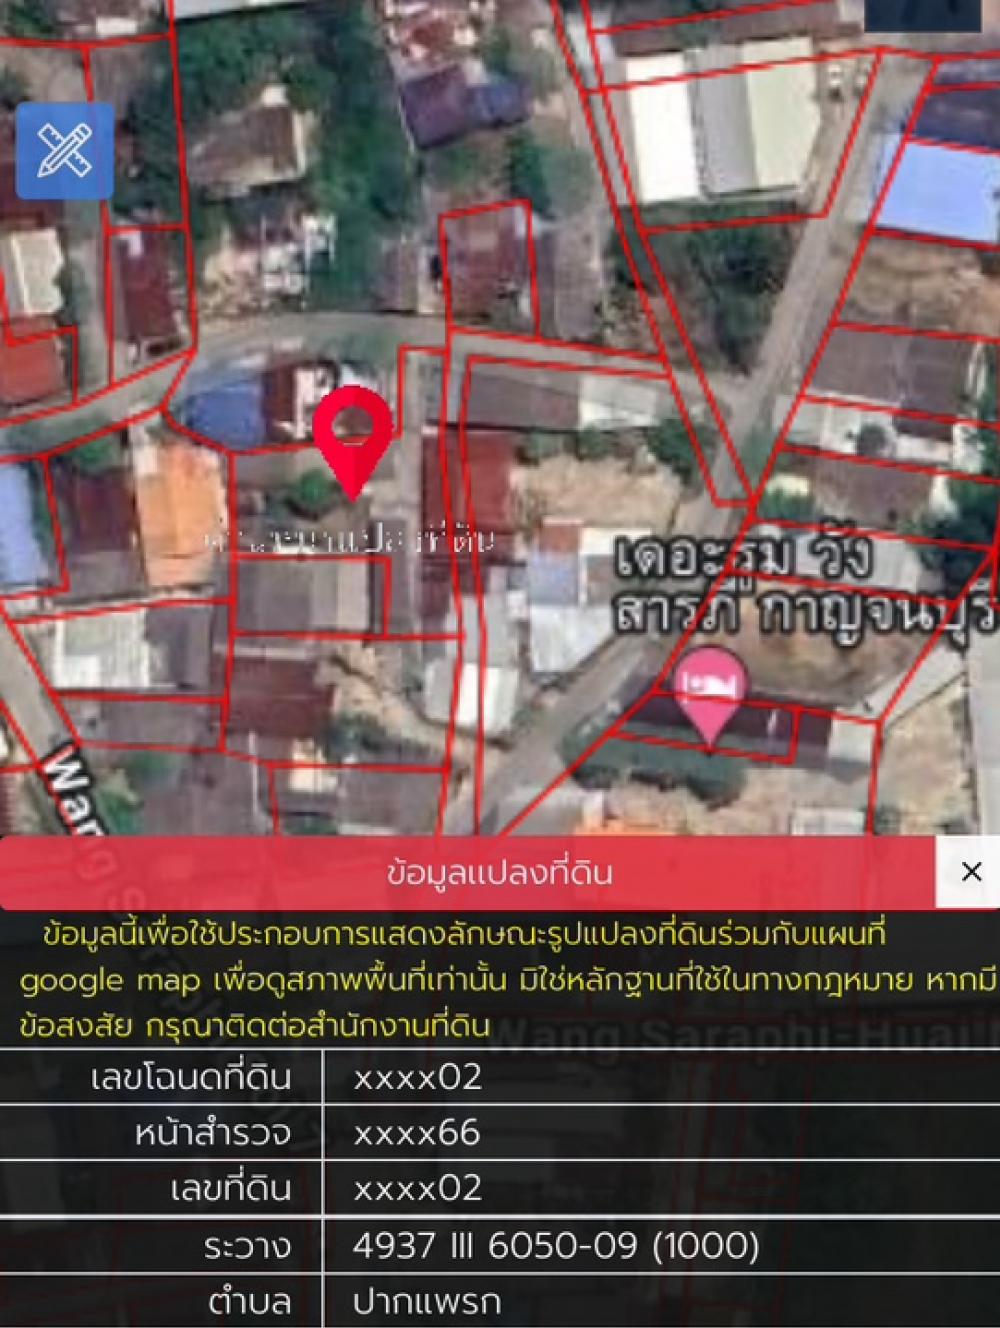 ขายที่ดินกาญจนบุรี : #ขายที่ดิน พร้อมสิ่งปลูกสร้าง ใจกลางเมืองกาญจนบุรี